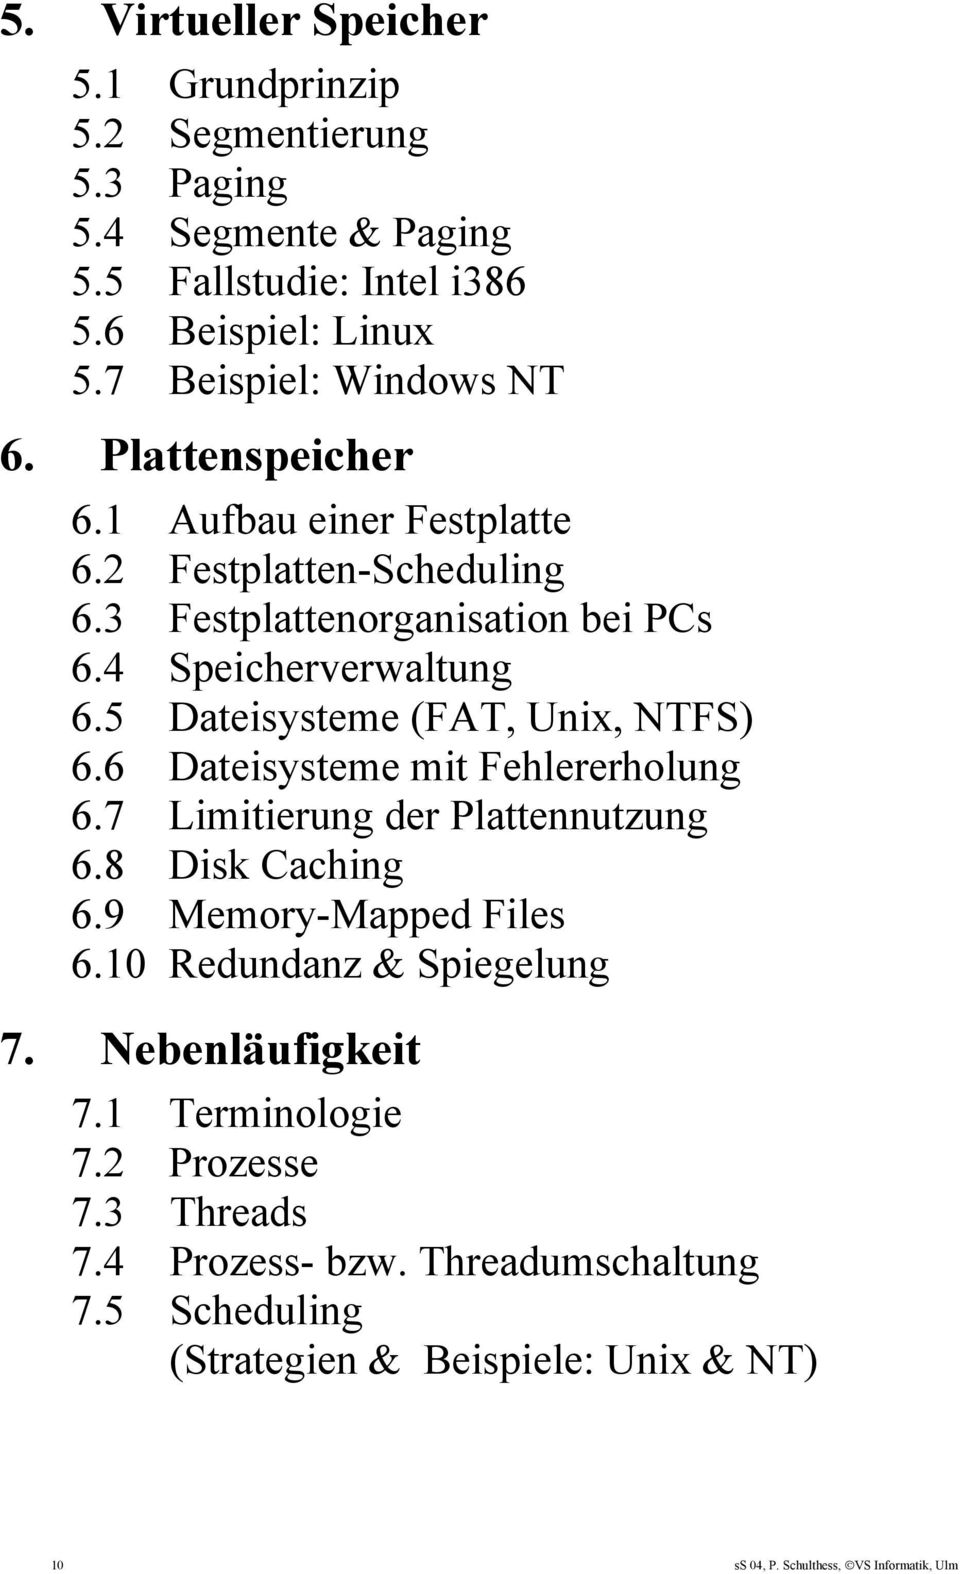 5 Dateisysteme (FAT, Unix, NTFS) 6.6 Dateisysteme mit Fehlererholung 6.7 Limitierung der Plattennutzung 6.8 Disk Caching 6.9 Memory-Mapped Files 6.